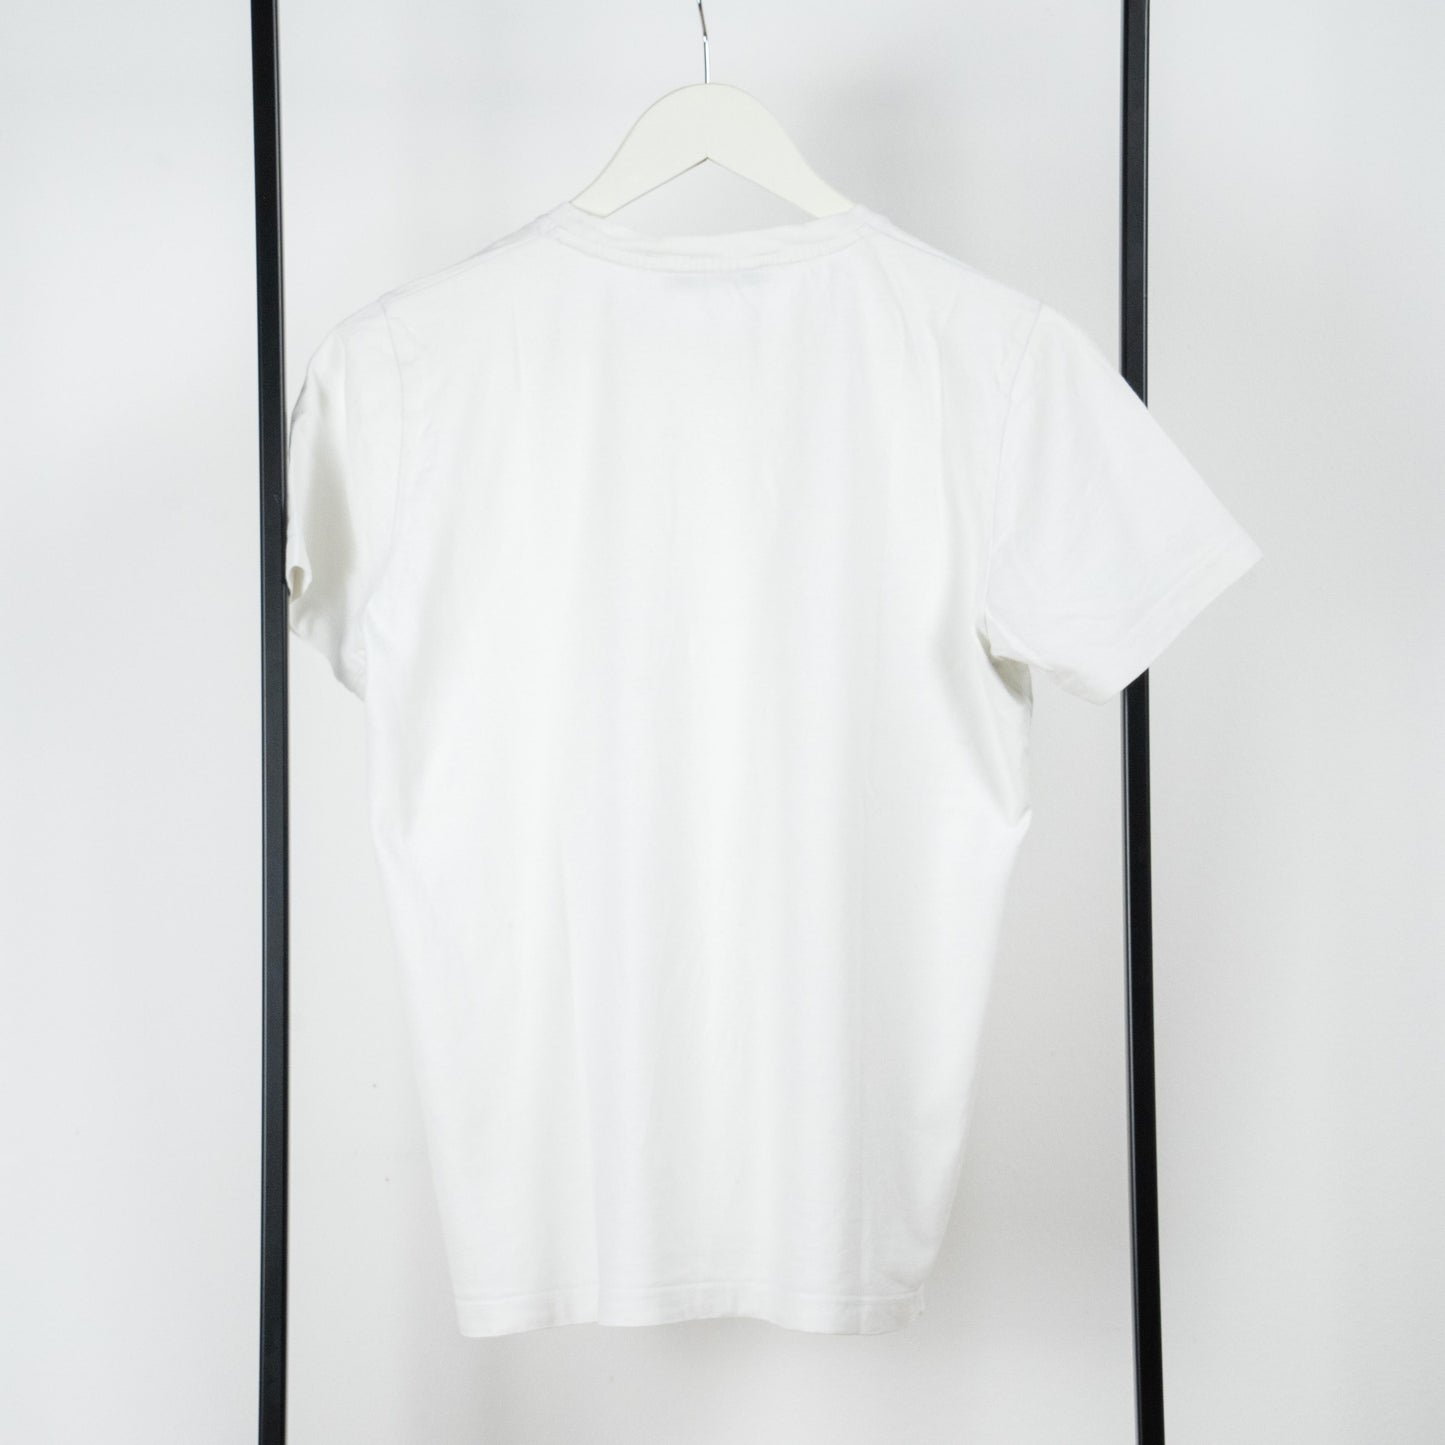 Basic White T-shirt